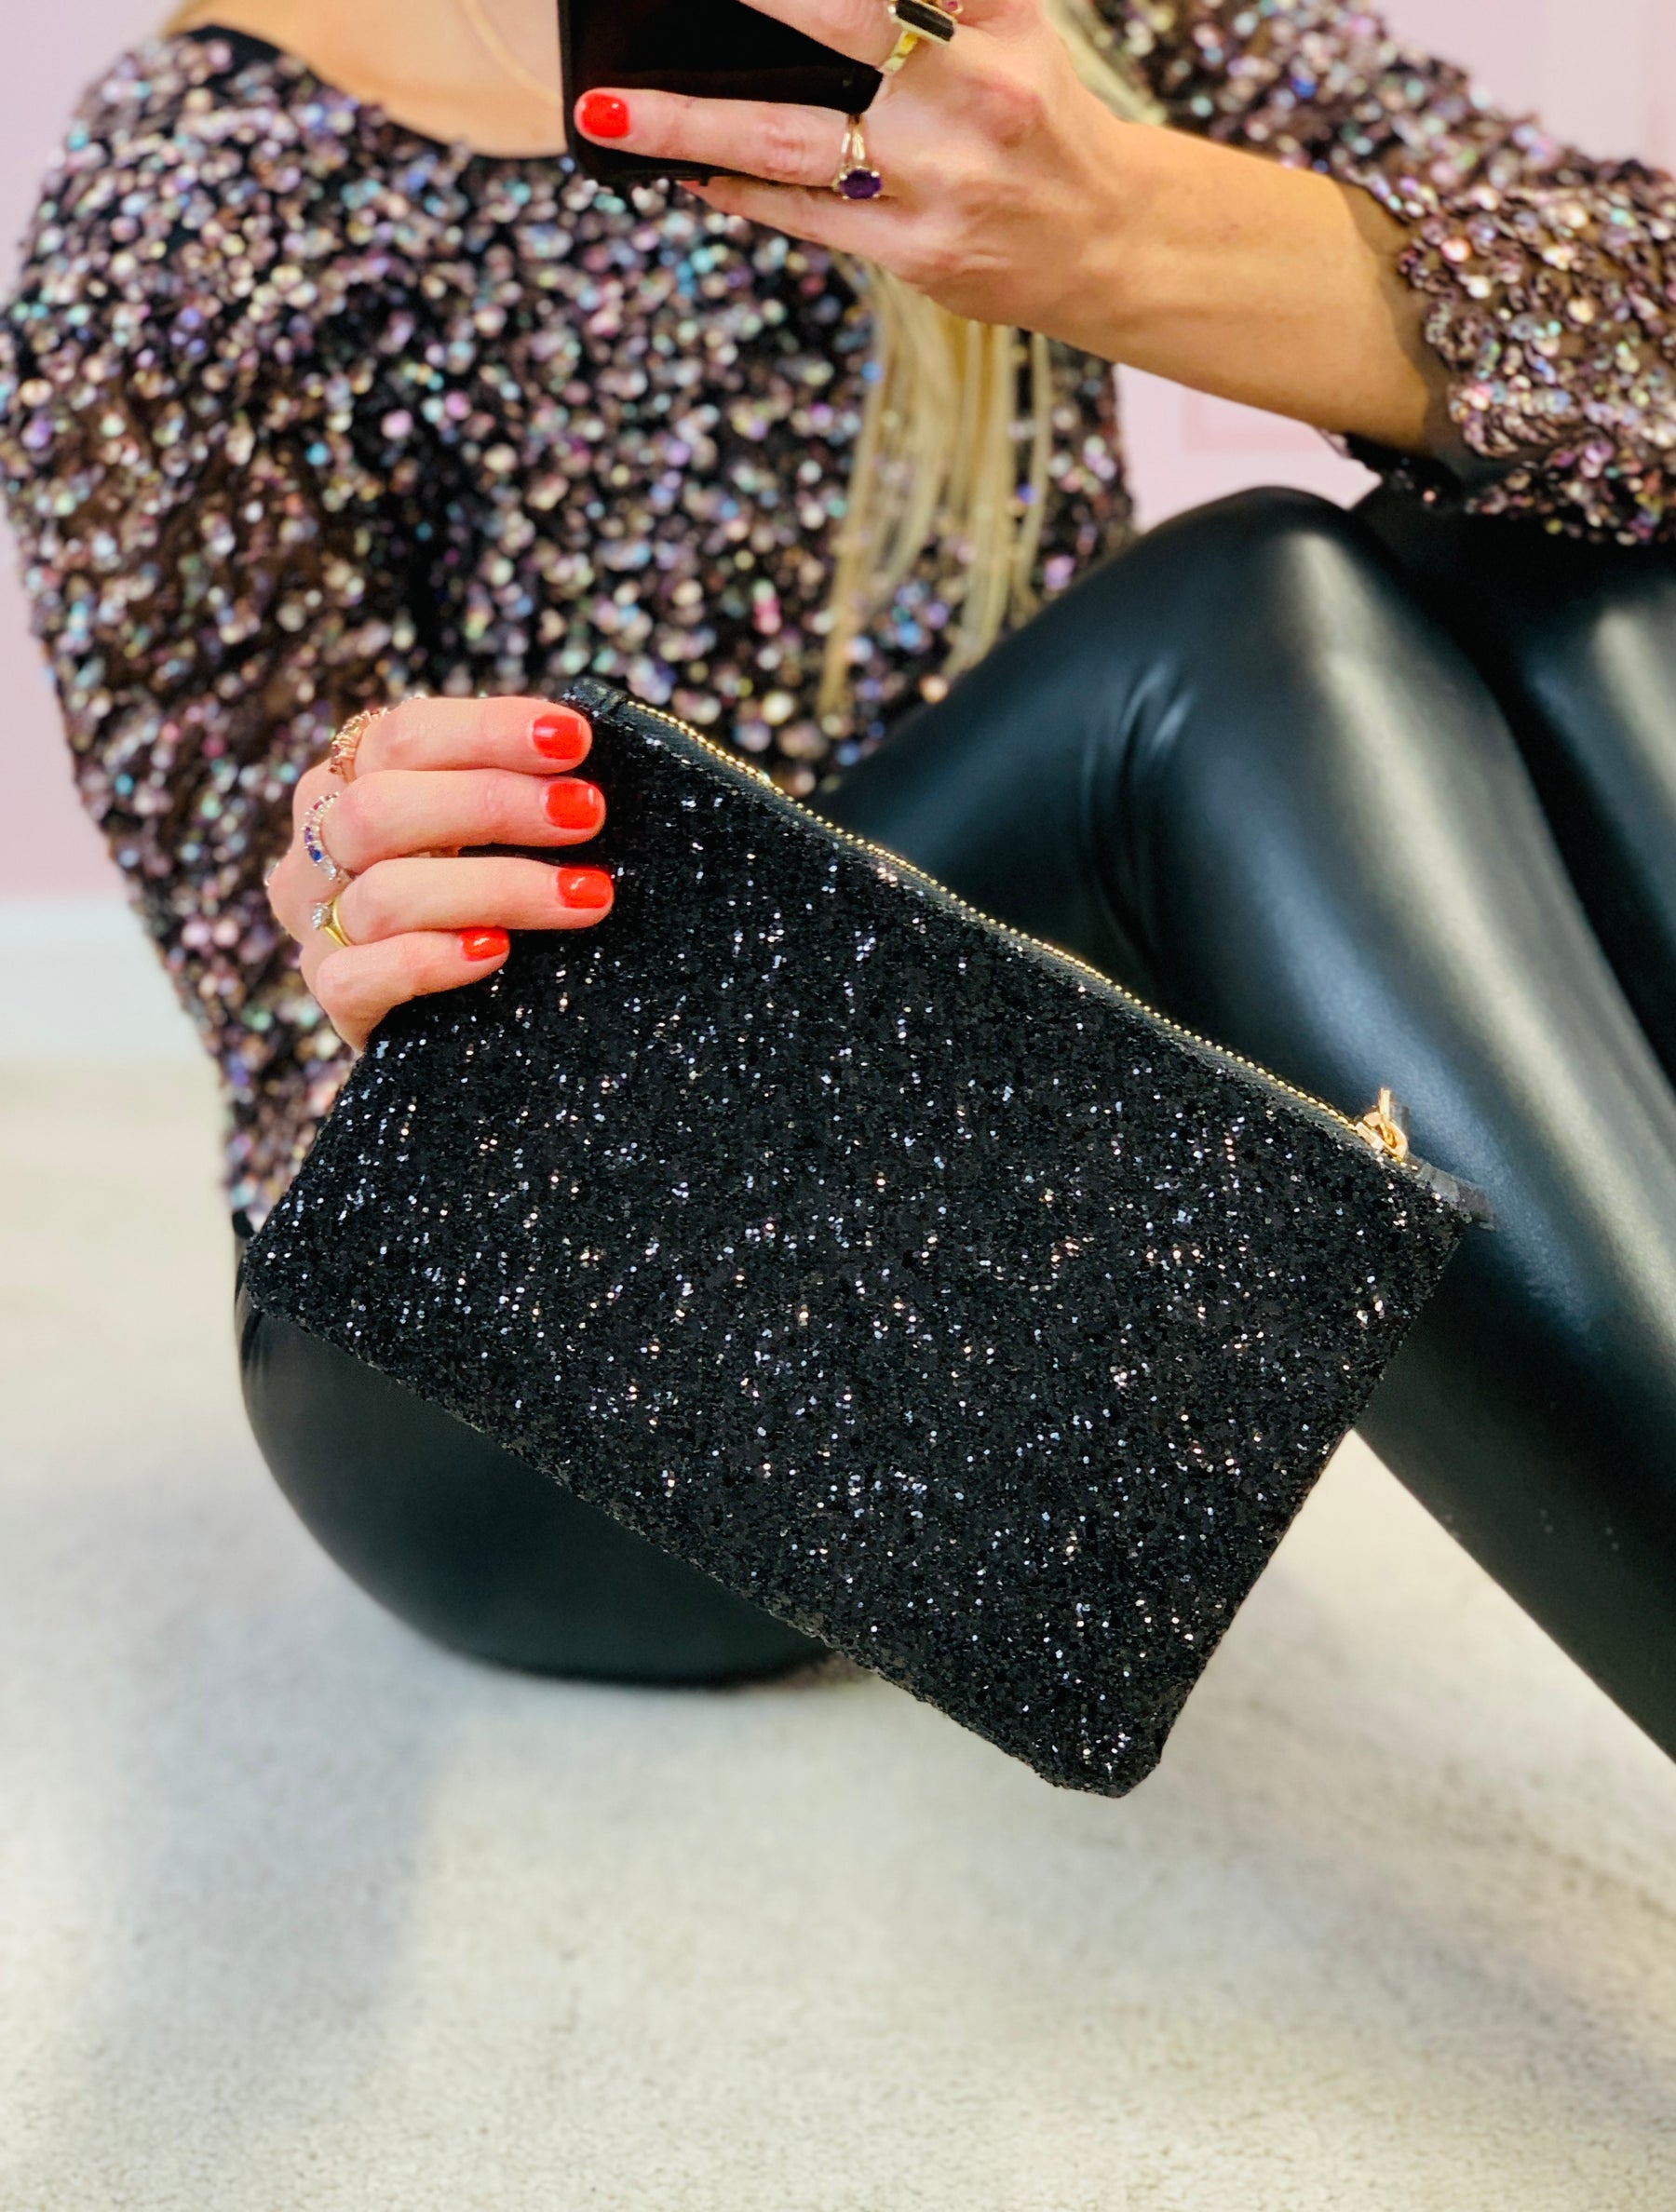 Black Glitter mini clutch bag